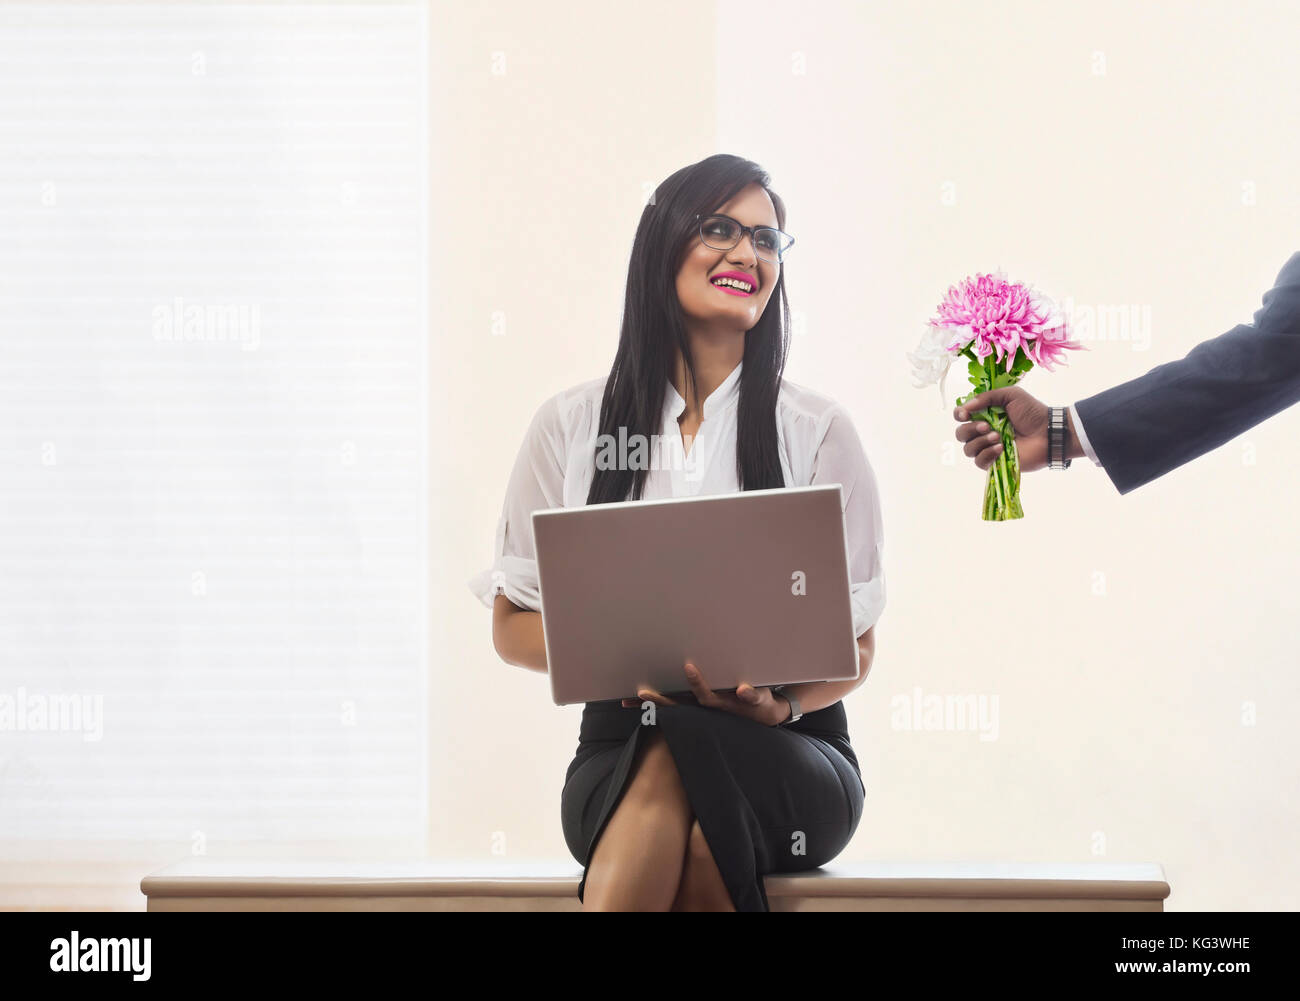 Businessman giving bouquet de fleurs femme in office Banque D'Images